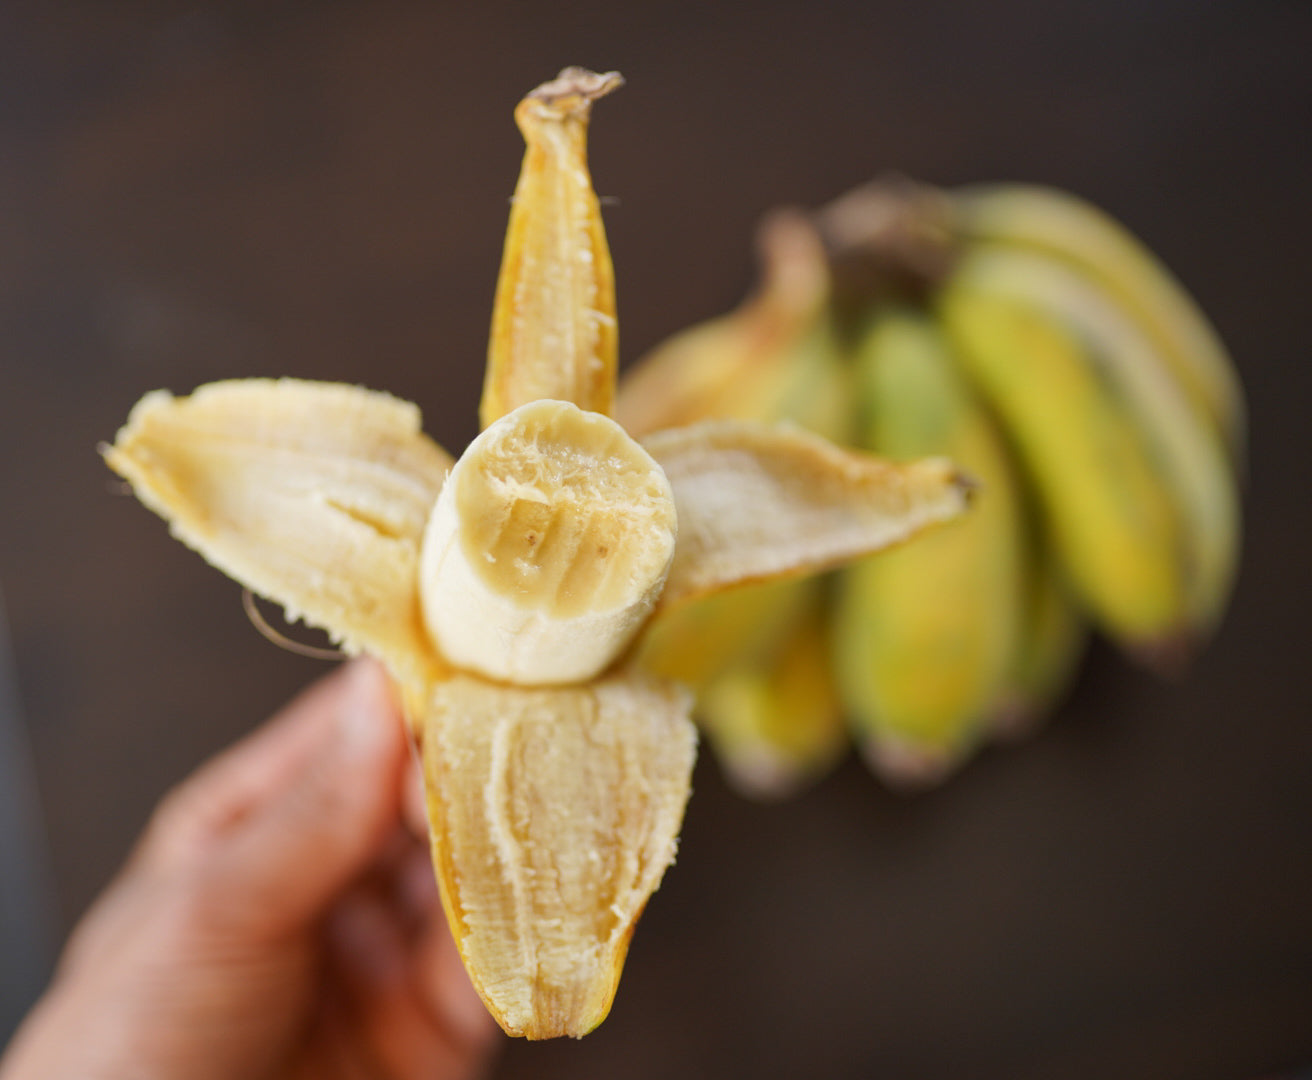 Banana - Misi Luki